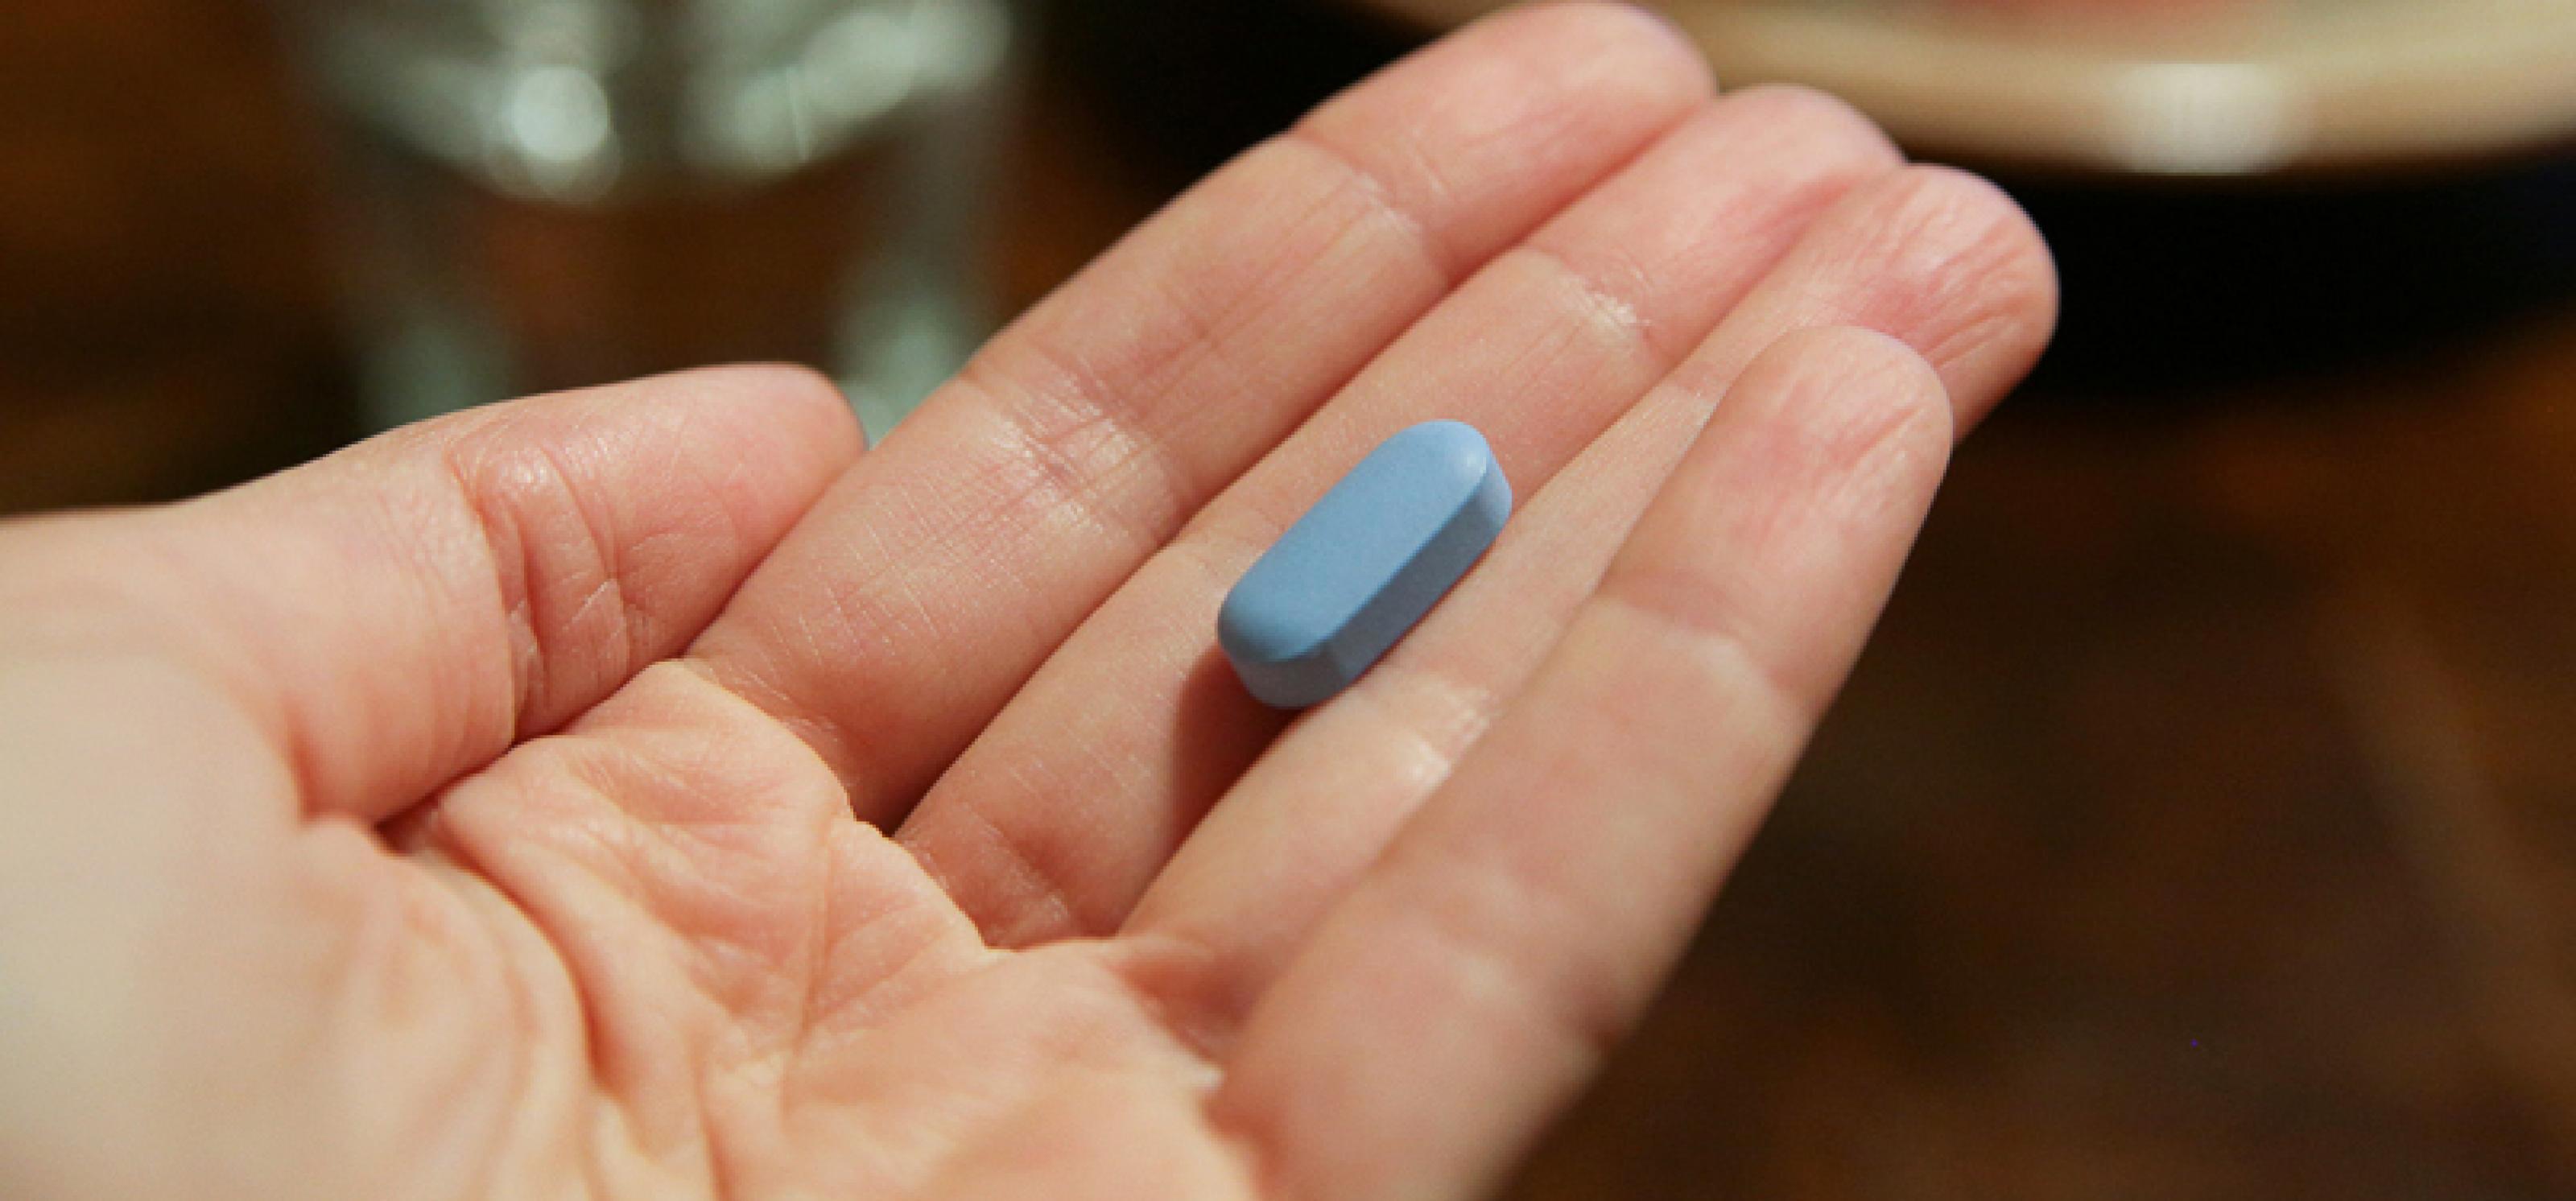 auf einer Handinnenfläche liegt eine blaue Pille